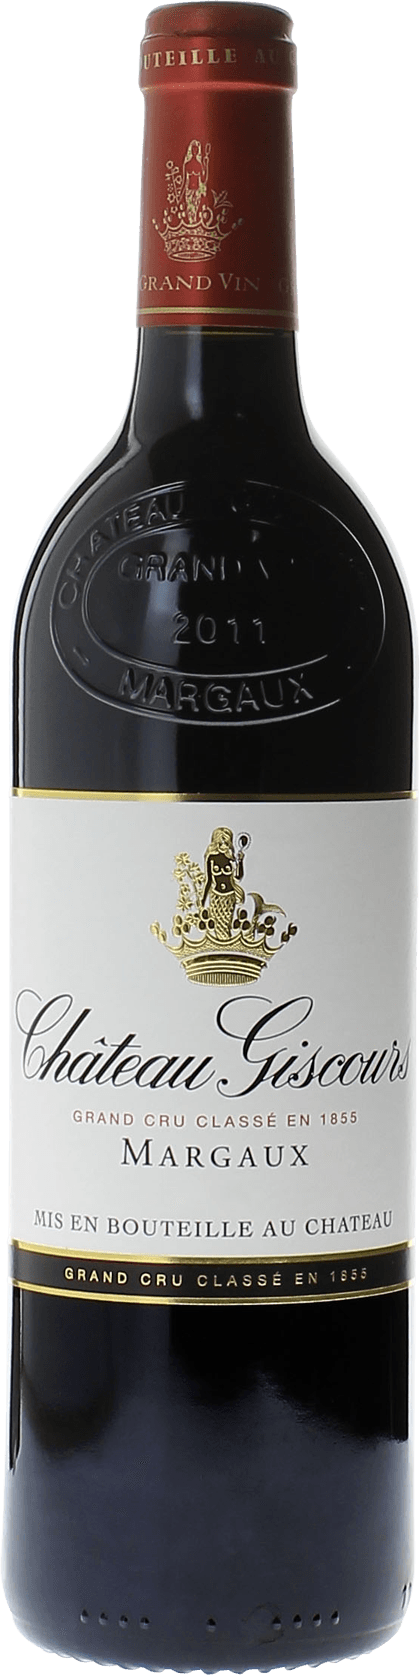 Giscours 2019 3me Grand cru class Margaux, Bordeaux rouge